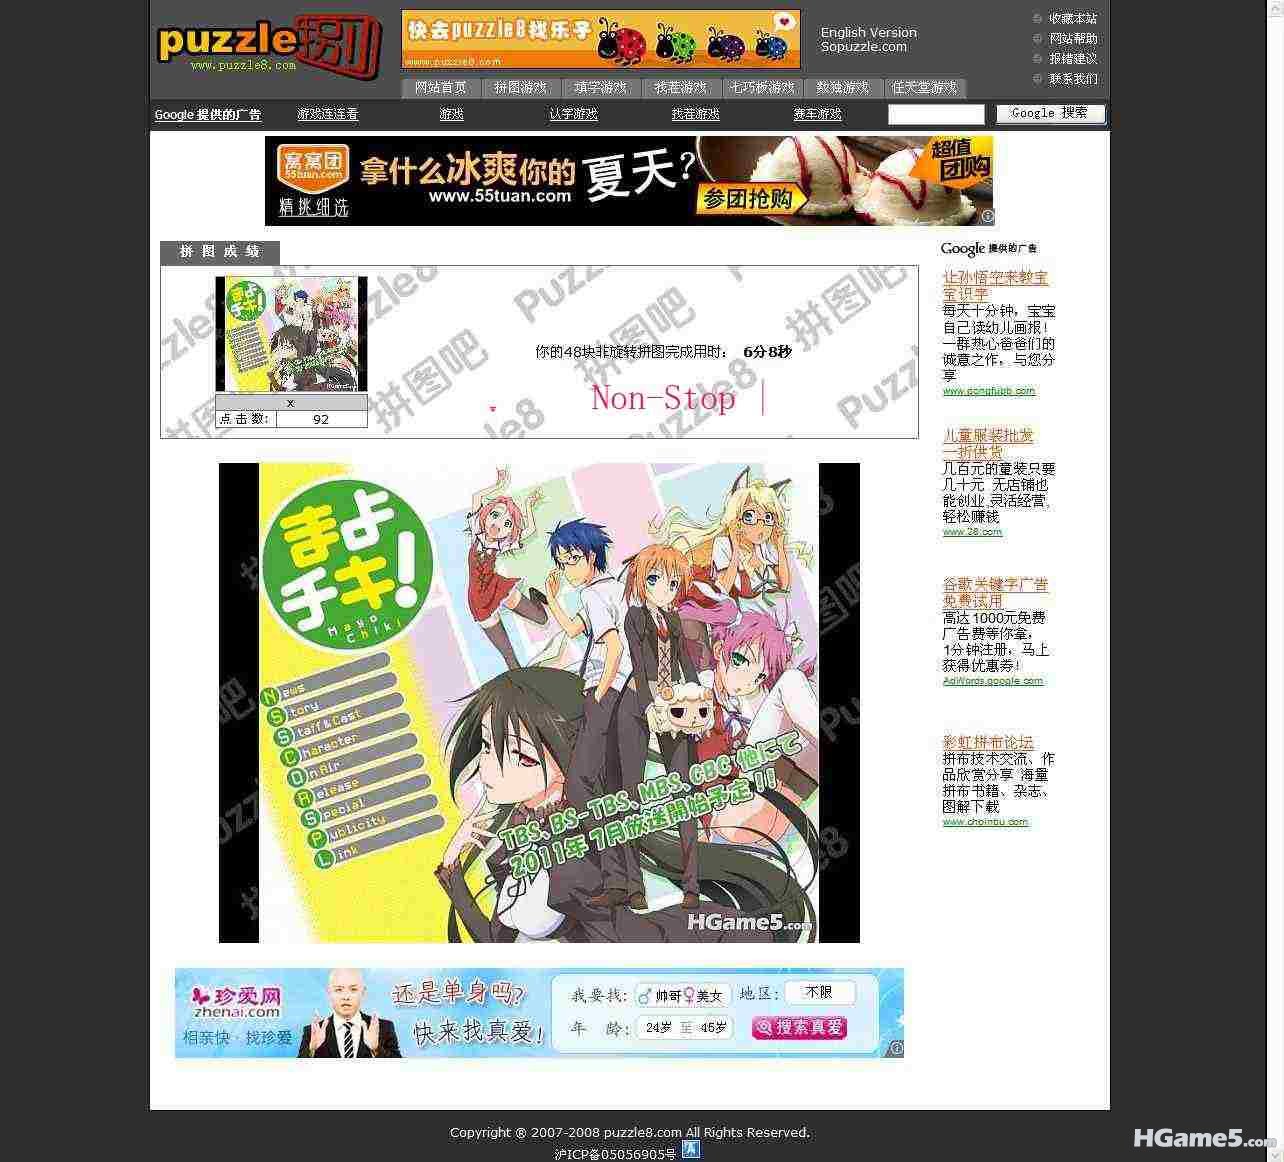 puzzle8 在线拼图游戏网站,拼图游戏.jpg